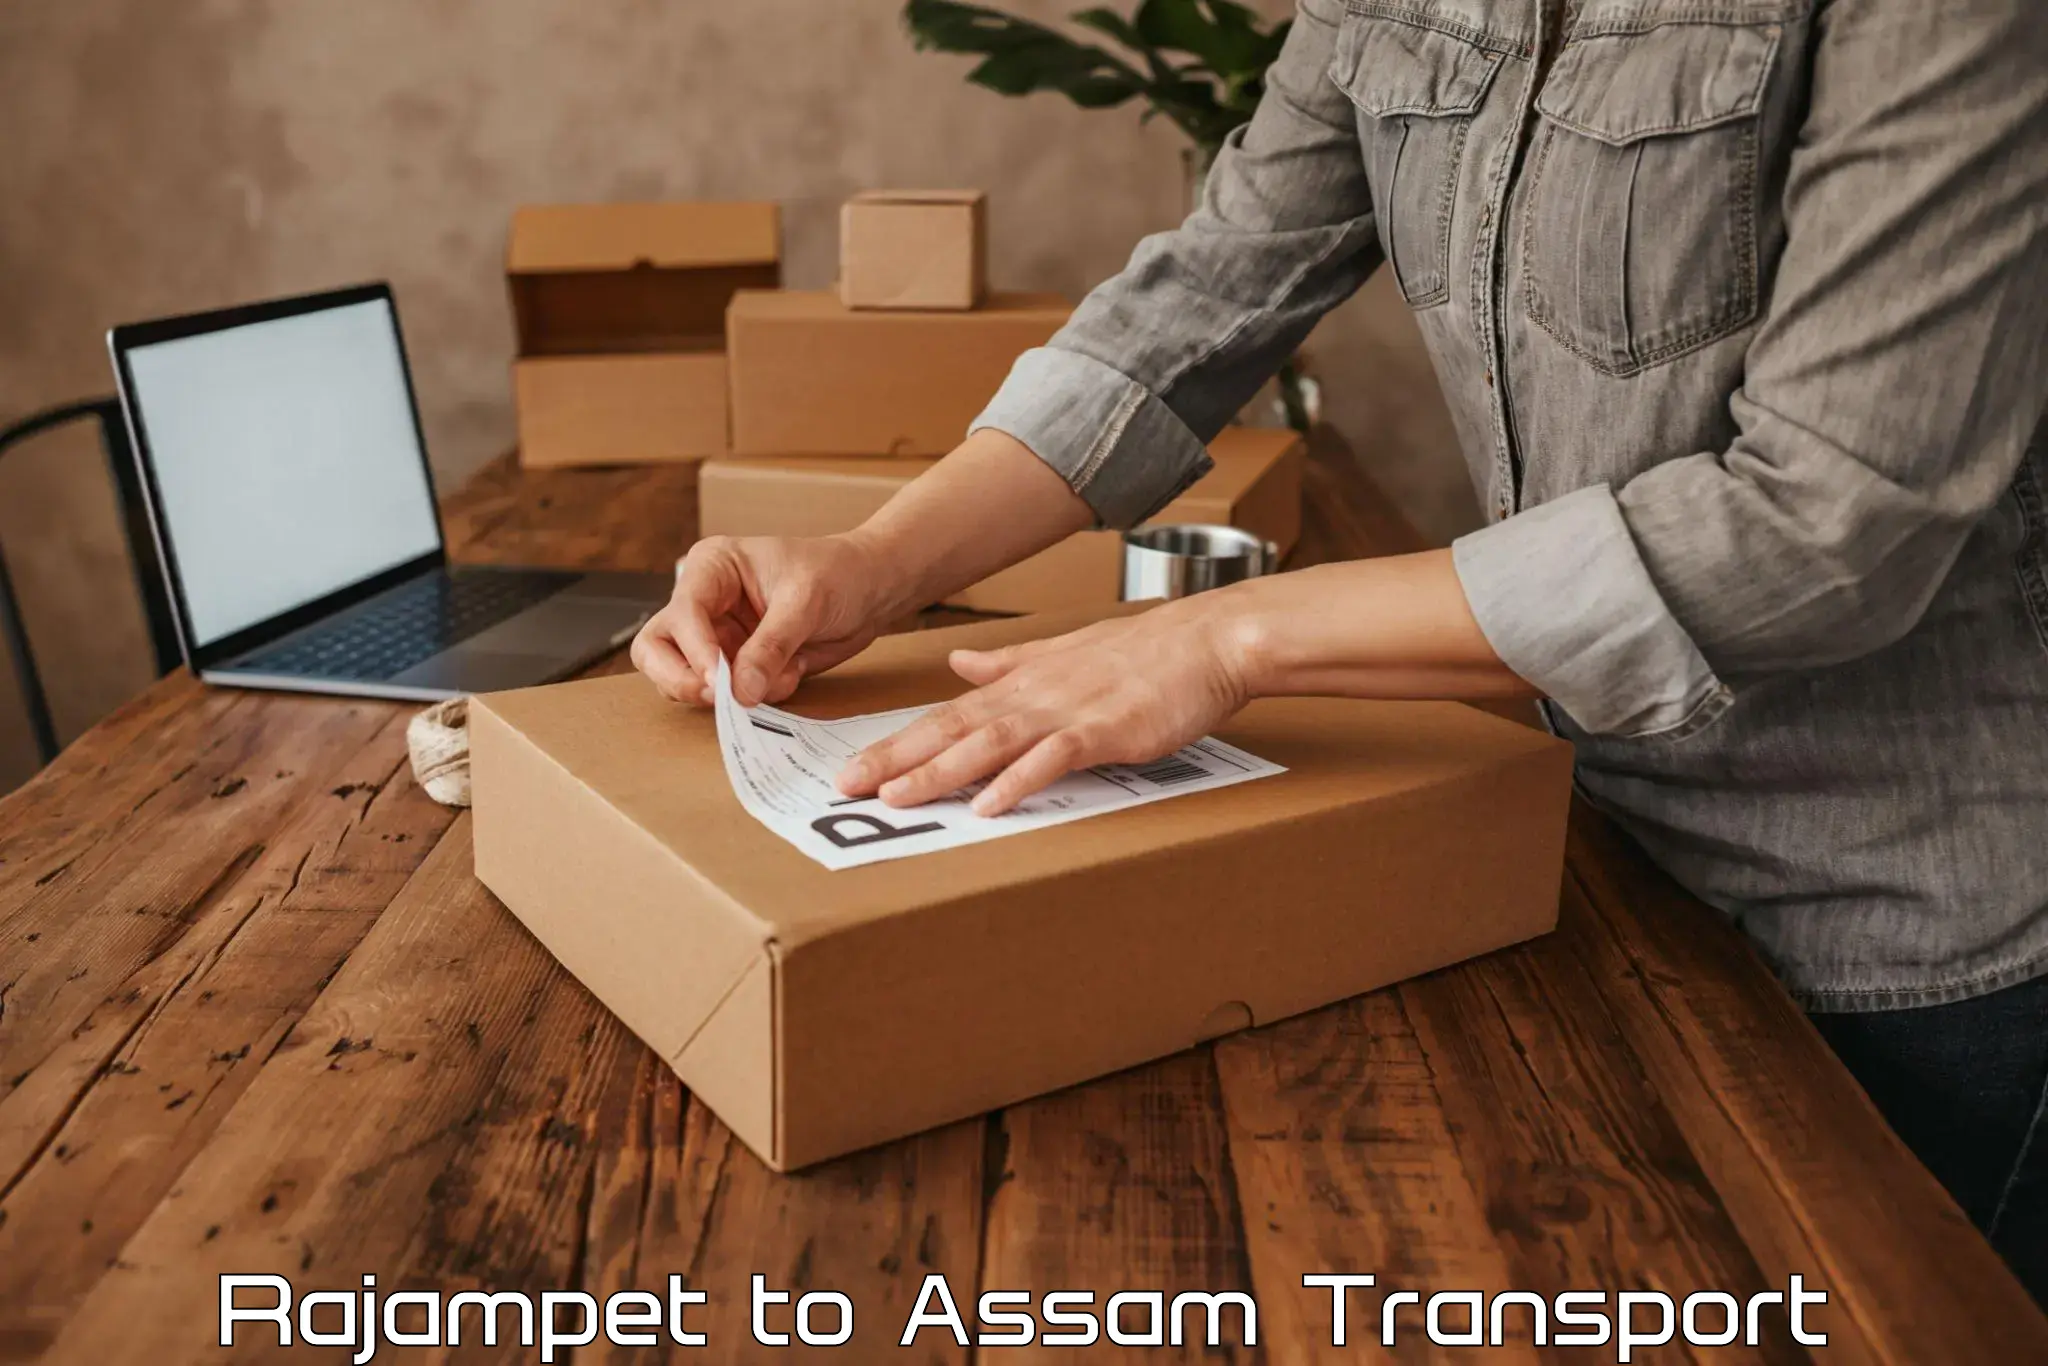 Bike transport service Rajampet to Assam